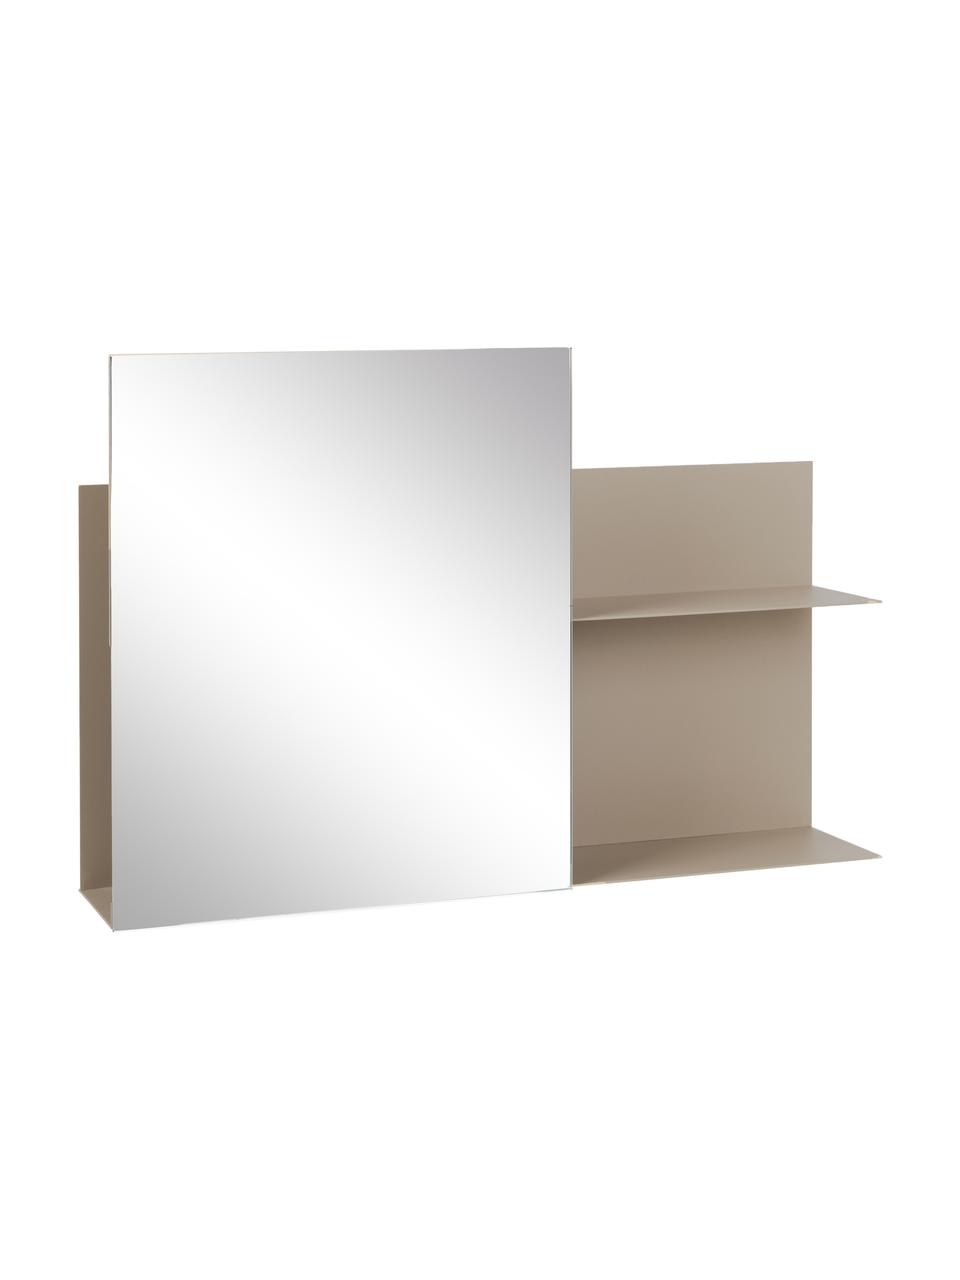 Metalen wandrek Svante met spiegel in beige, Beige, 51 x 25 cm